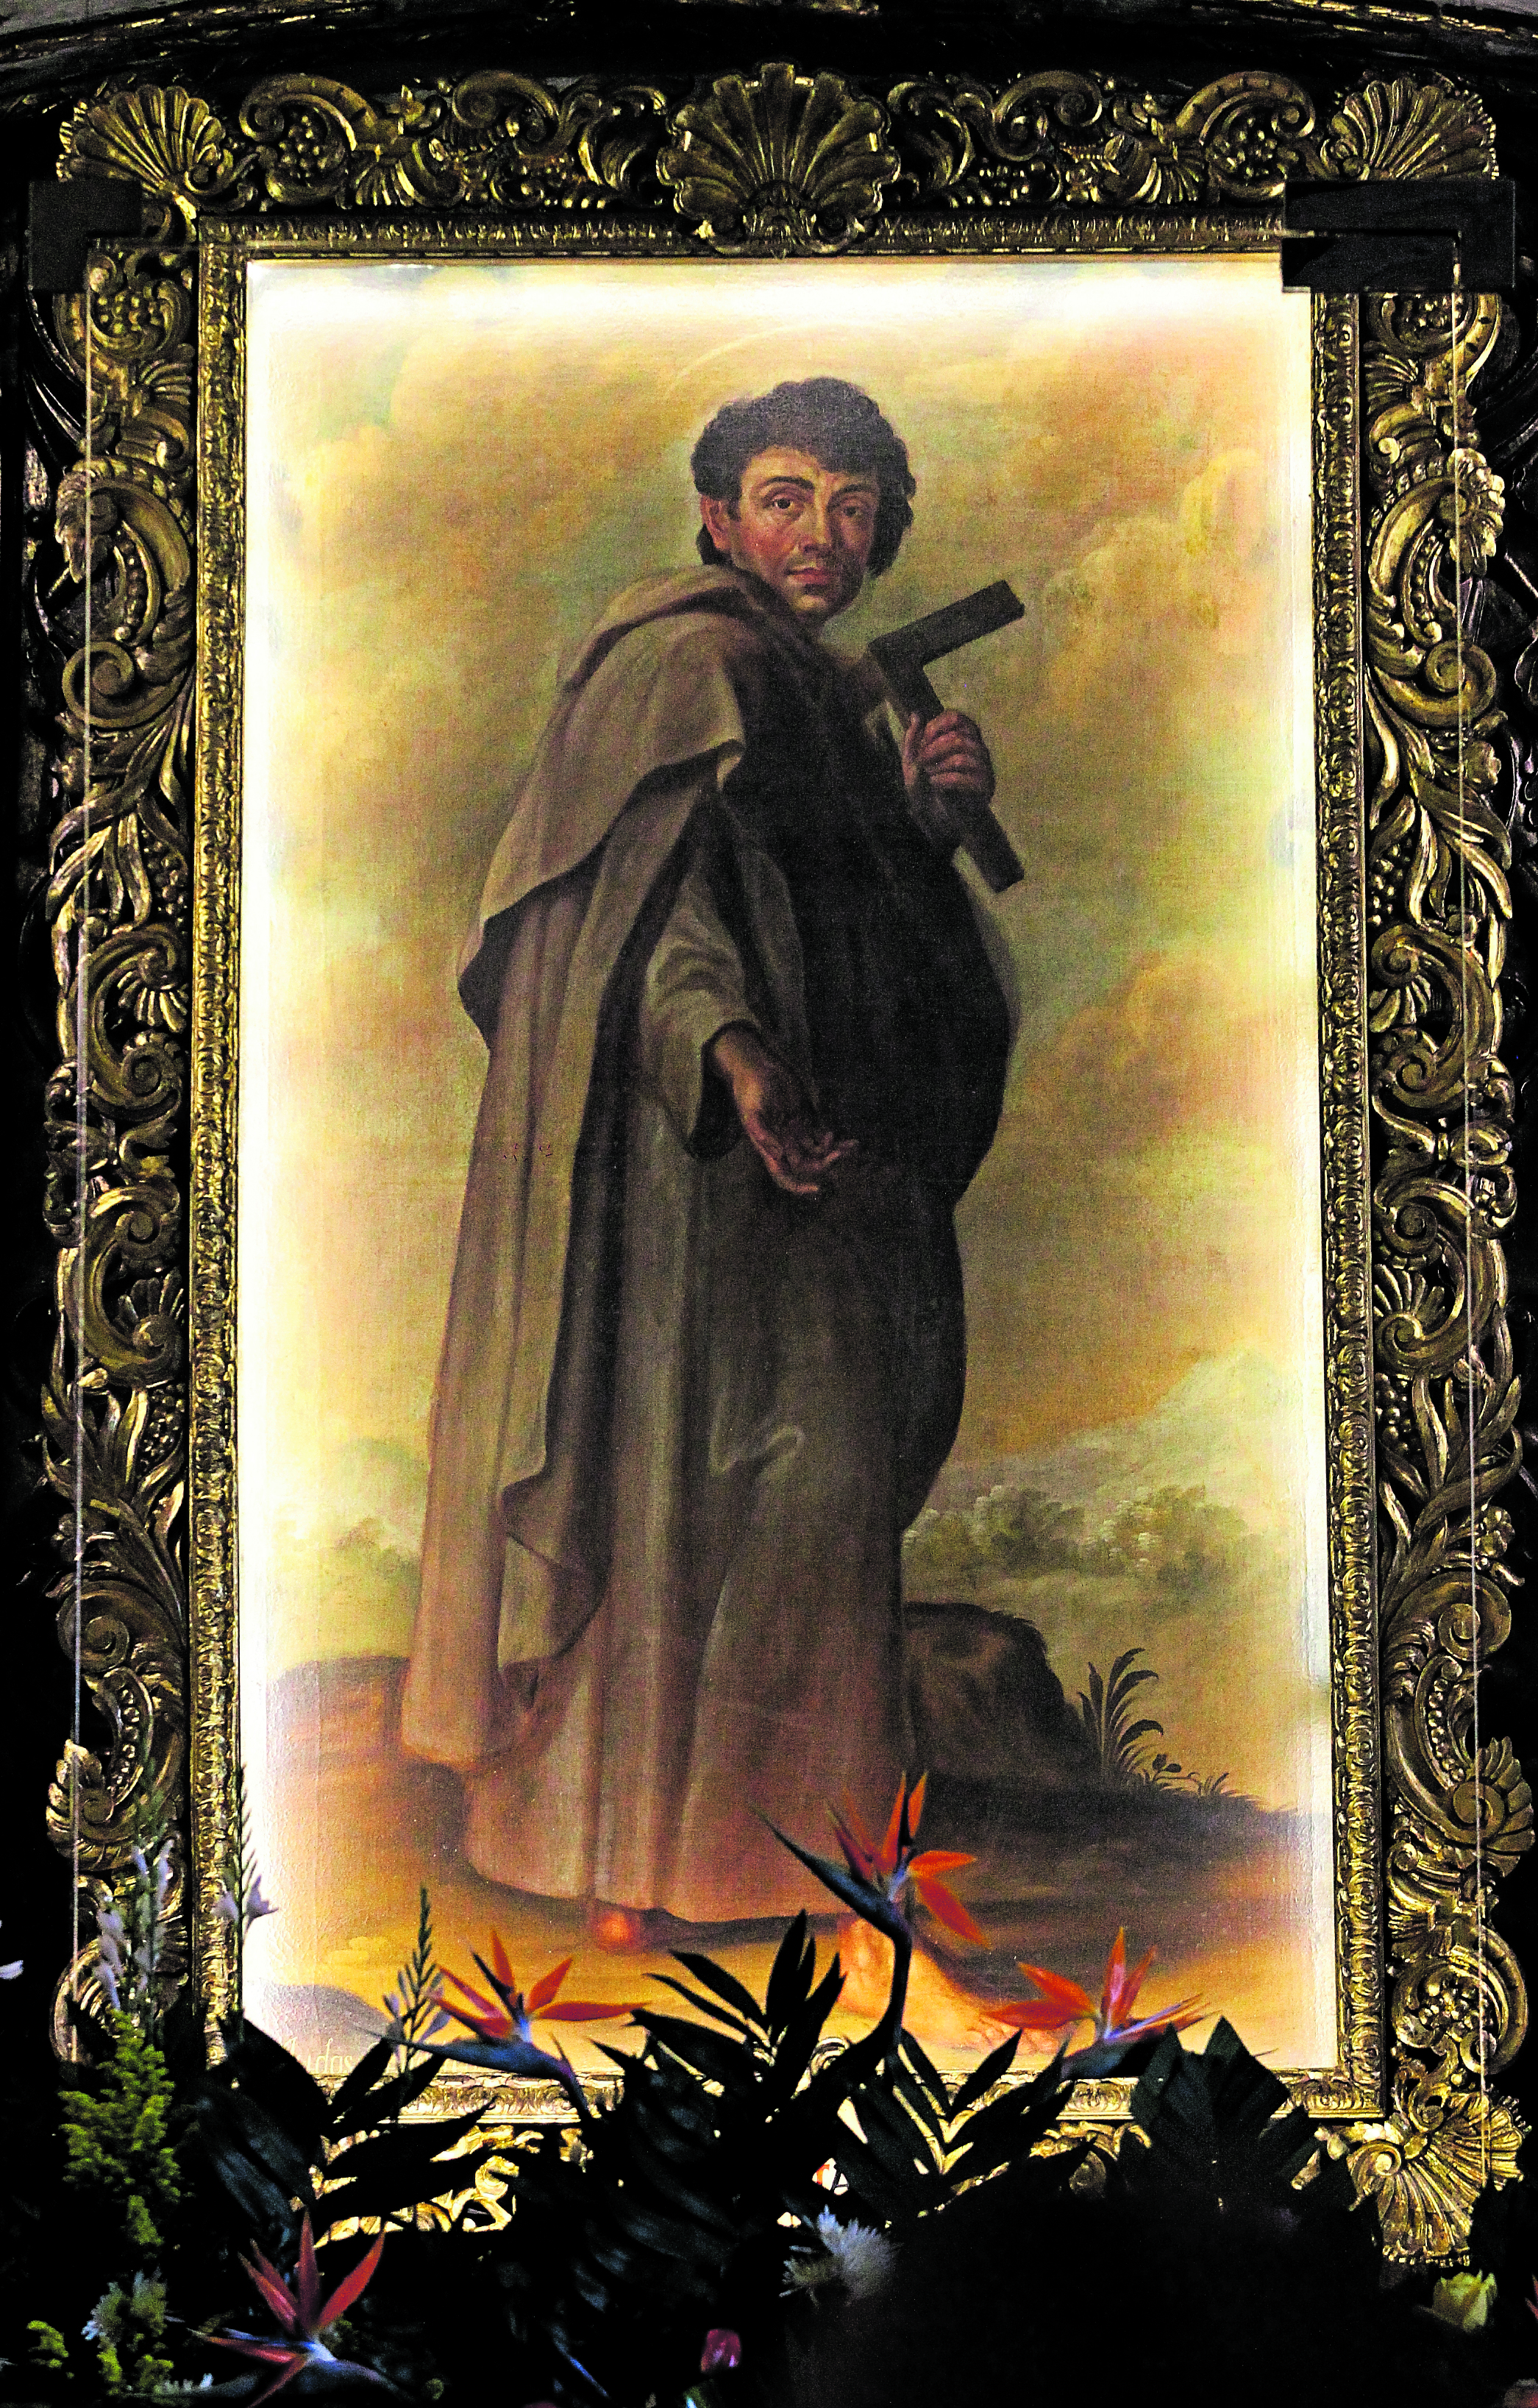 Santo del día 28 de octubre: San Judas Tadeo. Santoral católico